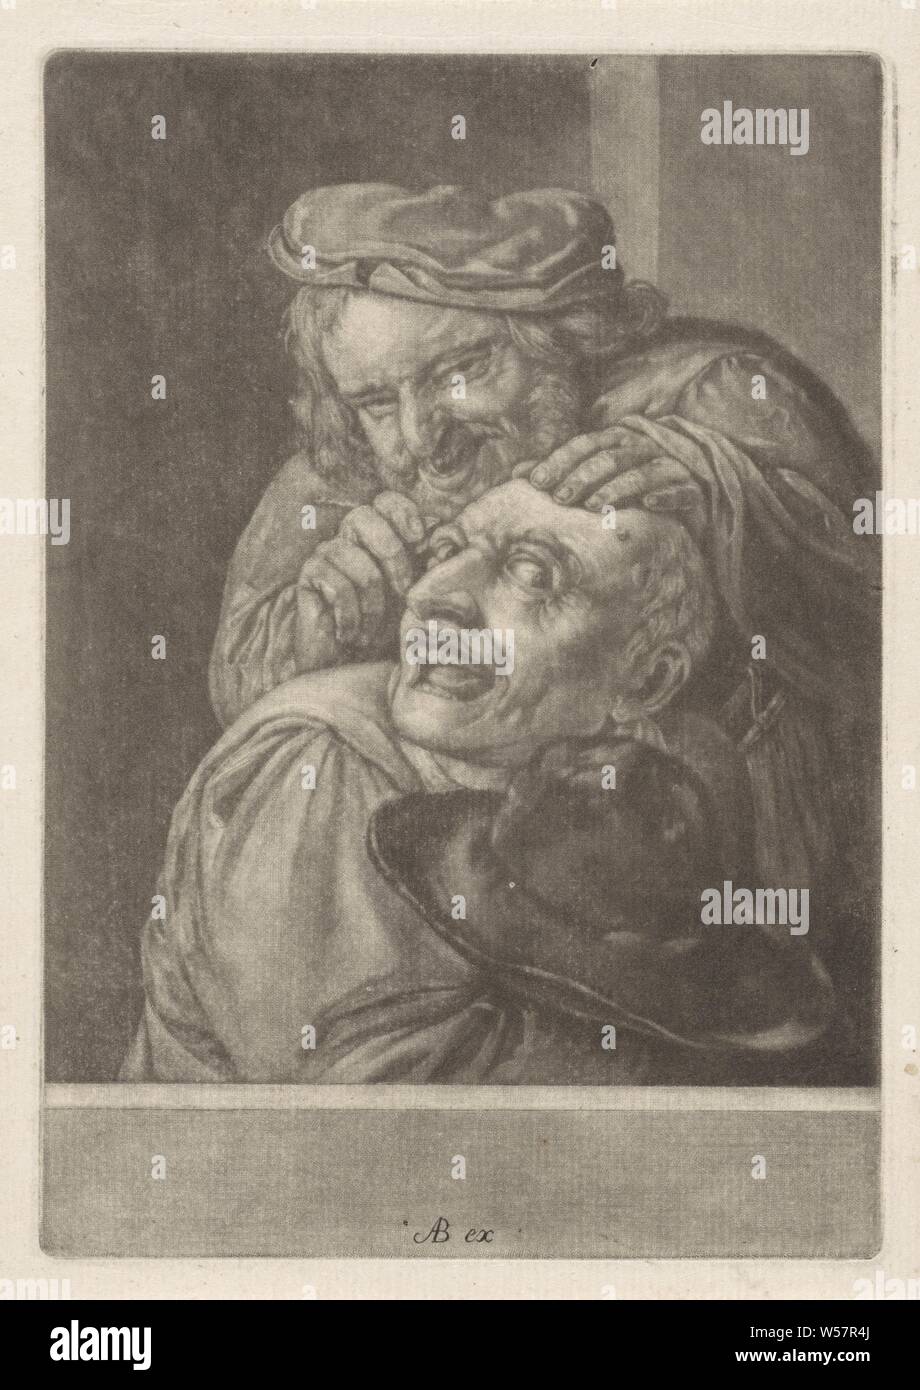 Keisnijder (le sentiment) Les cinq sens (titre de la série), le sens sentiment. Un homme coupe un rocher sur la tête d'un autre homme. L'impression est partie d'une série avec les cinq sens, sentiment (l'un des cinq sens), l'opération de la pierre, par ex. . : par la sorcière de Malleghem, Abraham Bloteling, Amsterdam, 1652 - 1690, papier, gravure, h 195 mm × W 136 mm Banque D'Images